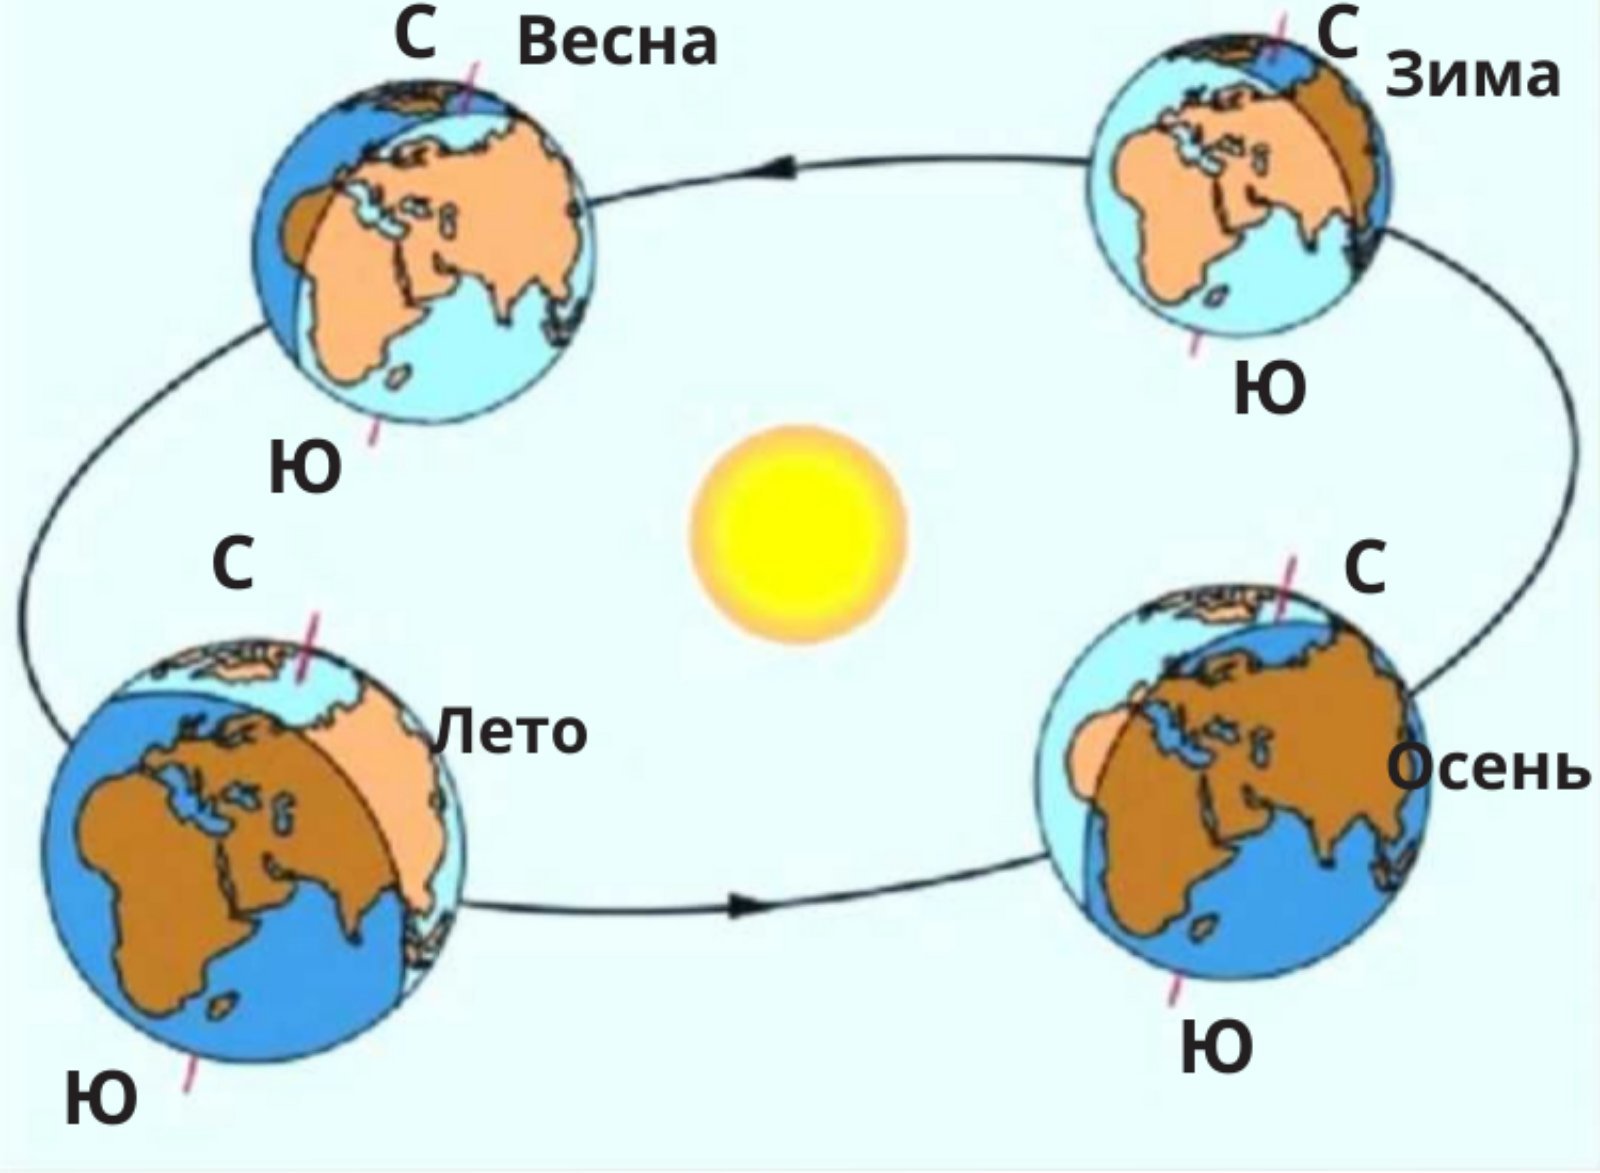 Смена времен года на земле обусловлена осевым. Смена времен года. Смена времён года на земле. Схема движения земли вокруг солнца. Вращение земли вокруг солнца.